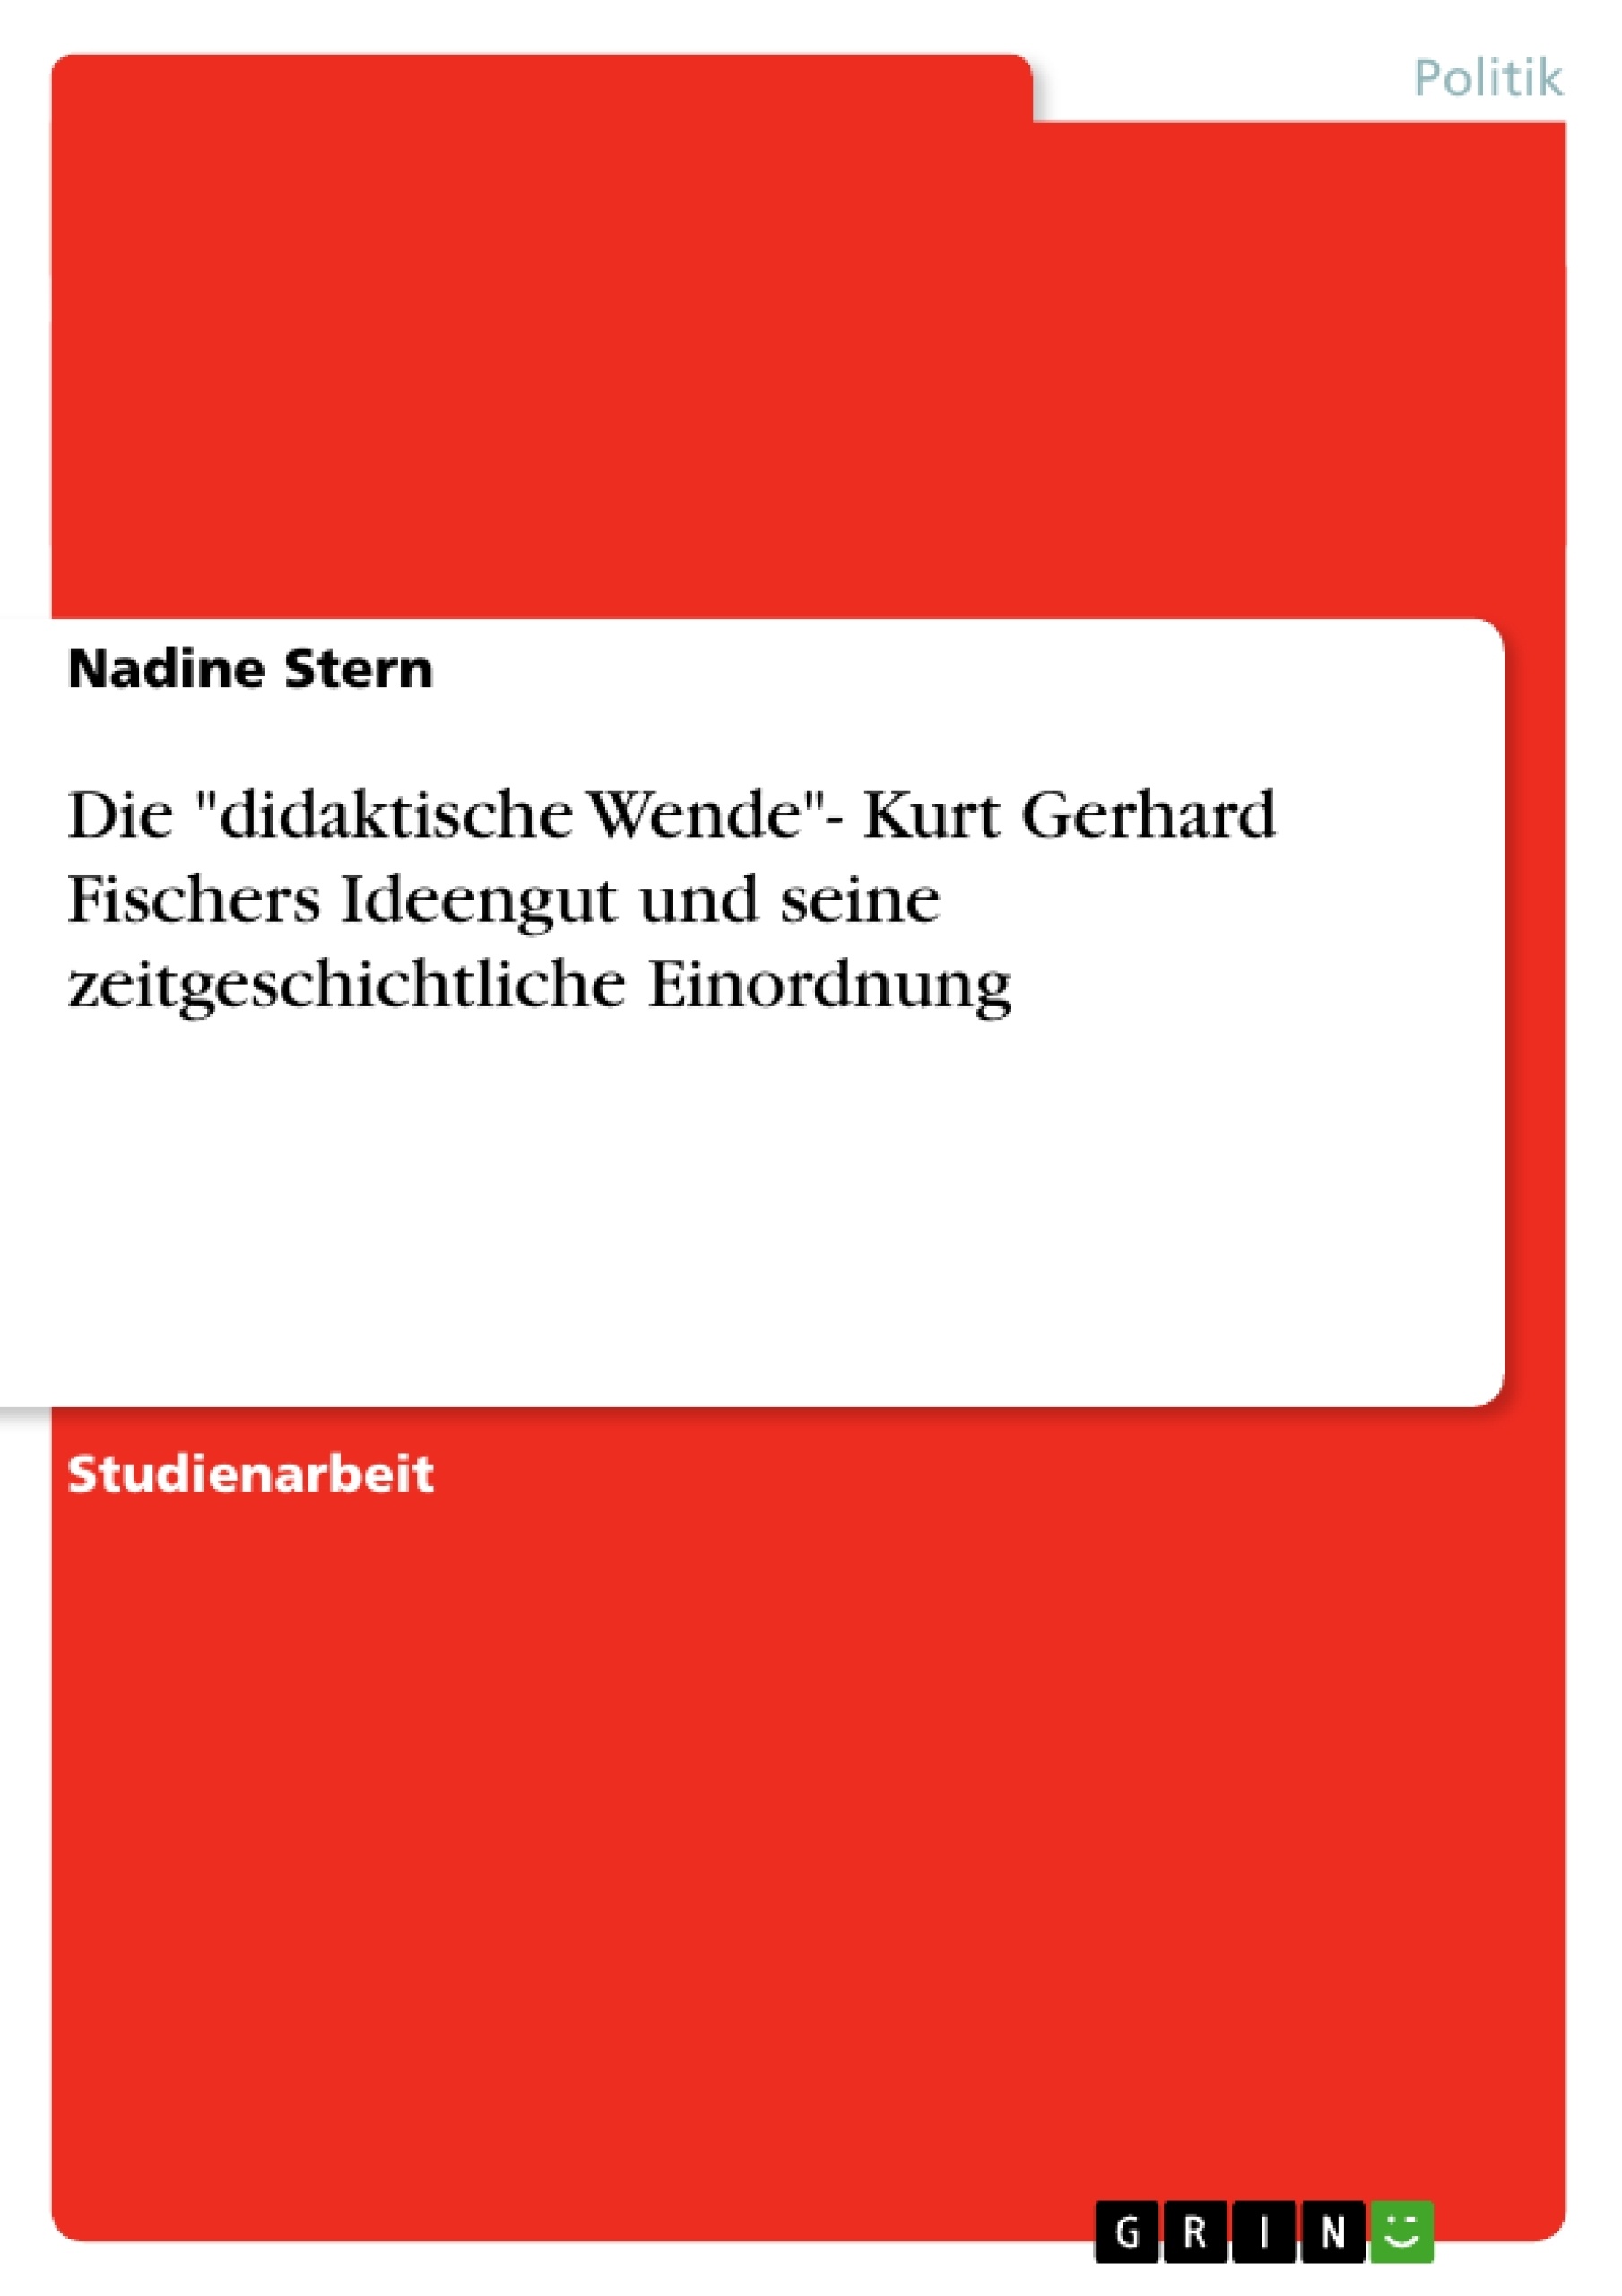 Título: Die "didaktische Wende"- Kurt Gerhard Fischers Ideengut und seine zeitgeschichtliche Einordnung